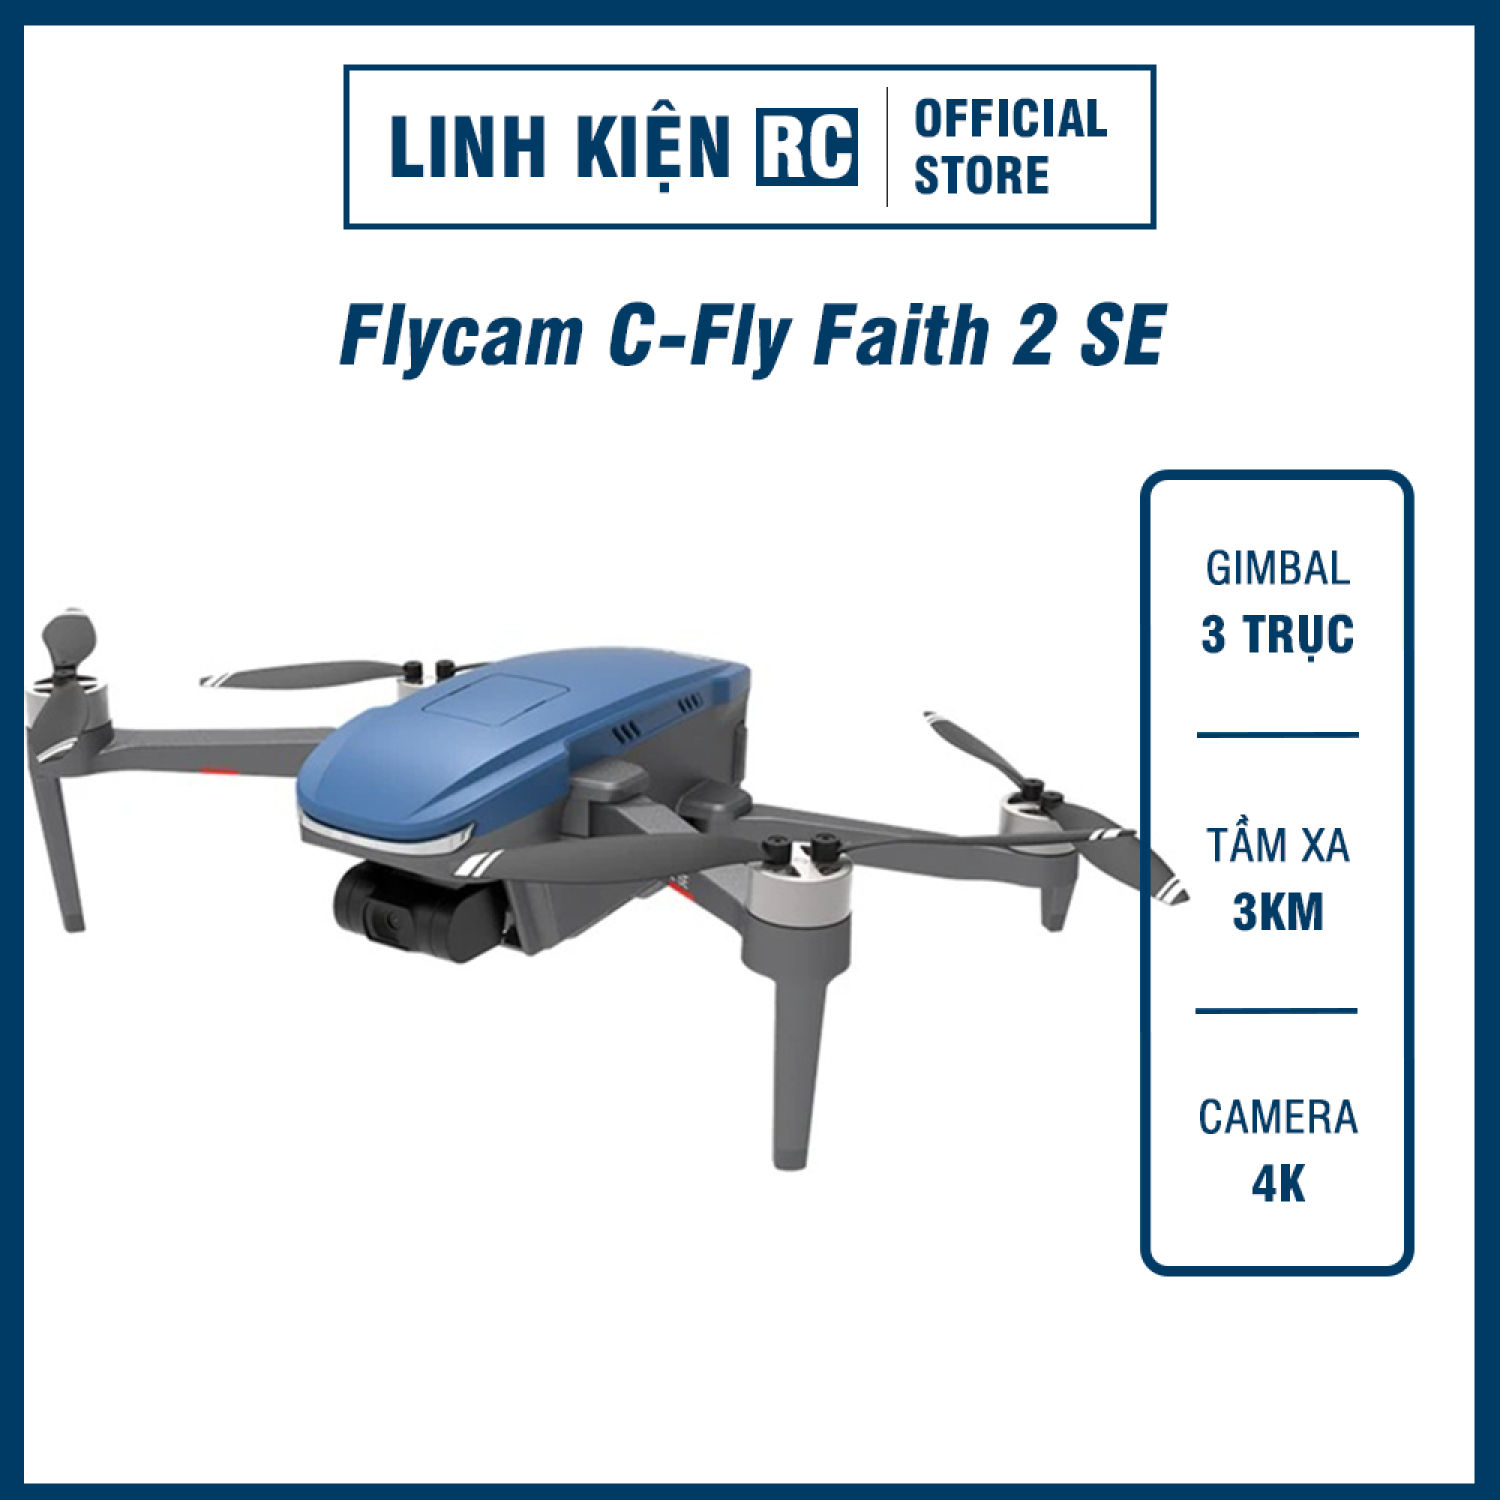 Flycam C-Fly Faith 2 SE 4K - Chống Rung 3 Trục - Bay Xa 3km - Máy Bay Chất Lượng Hình Ảnh Tốt Trong Tầm Giá